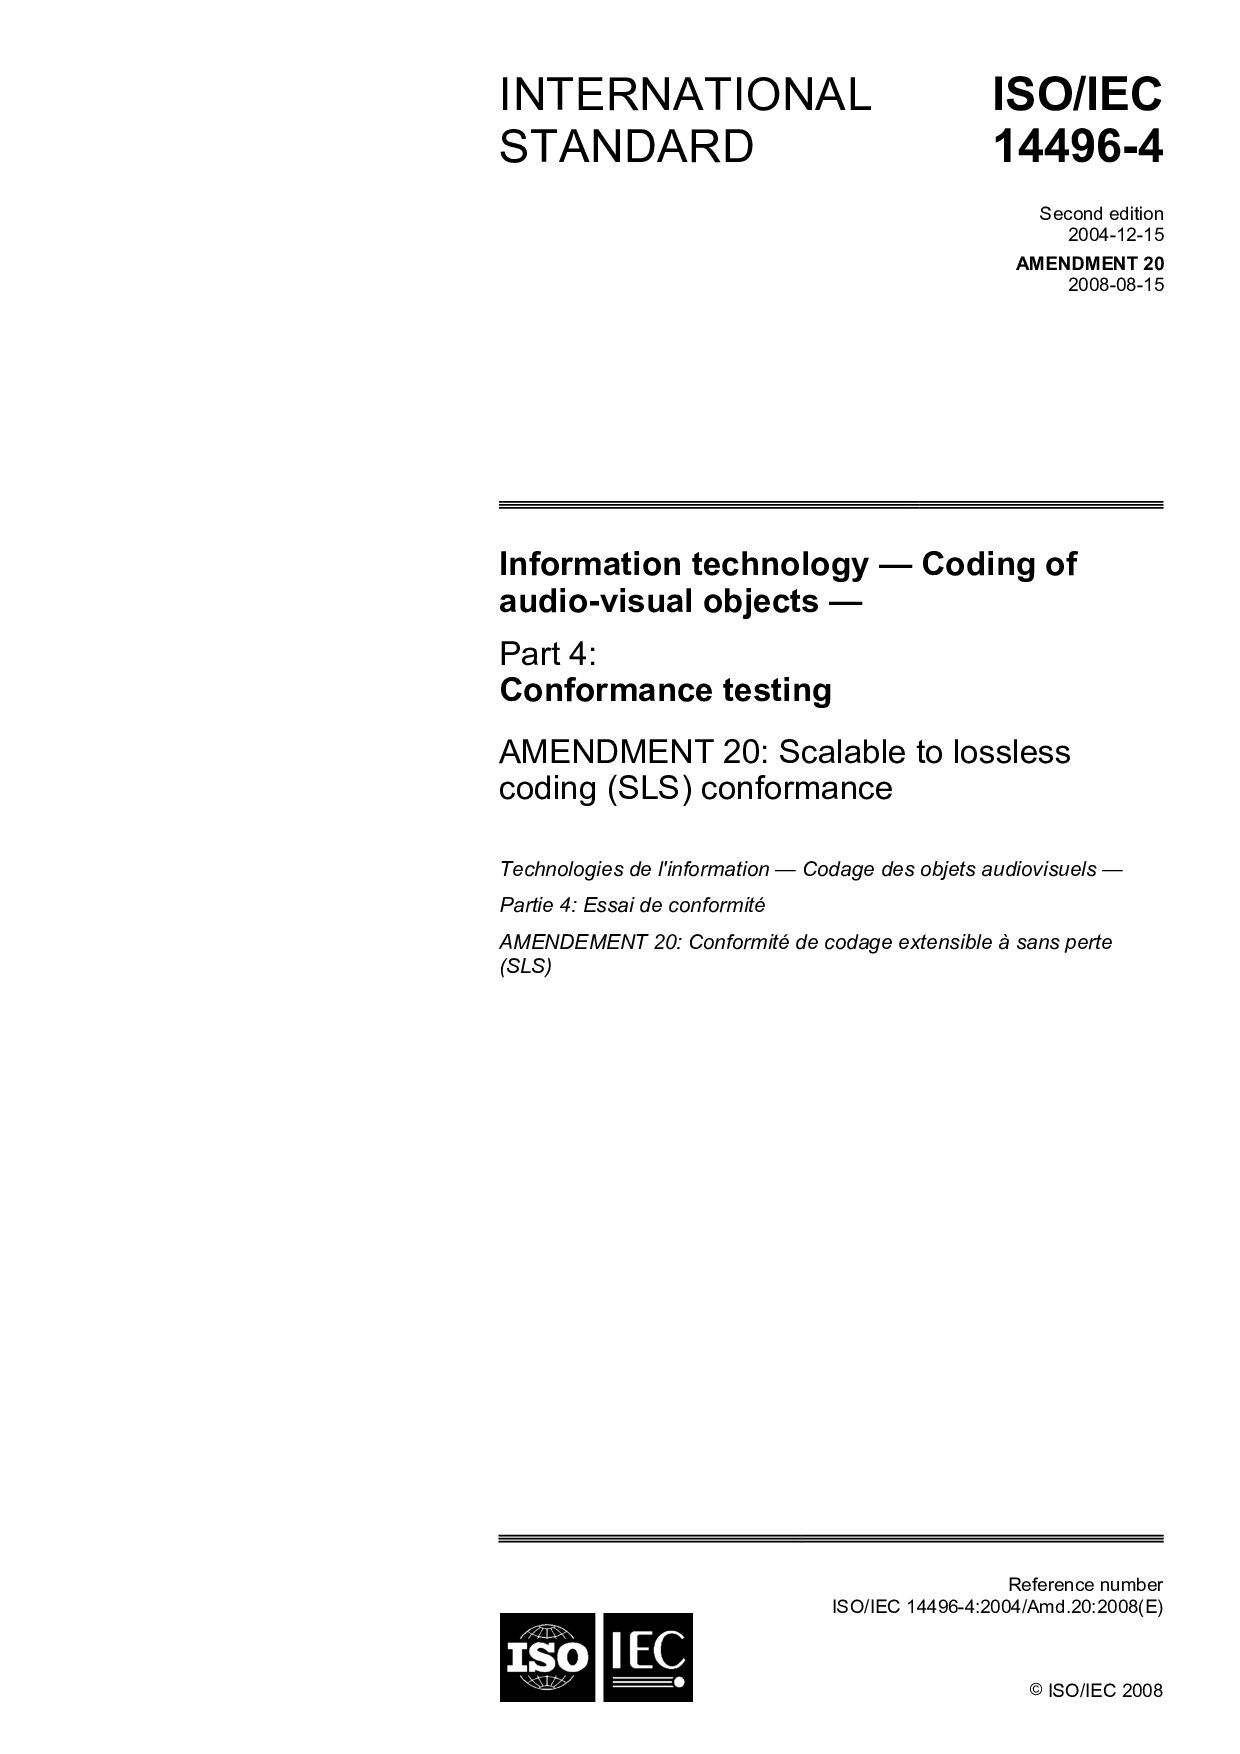 ISO/IEC 14496-4:2004/Amd 20:2008